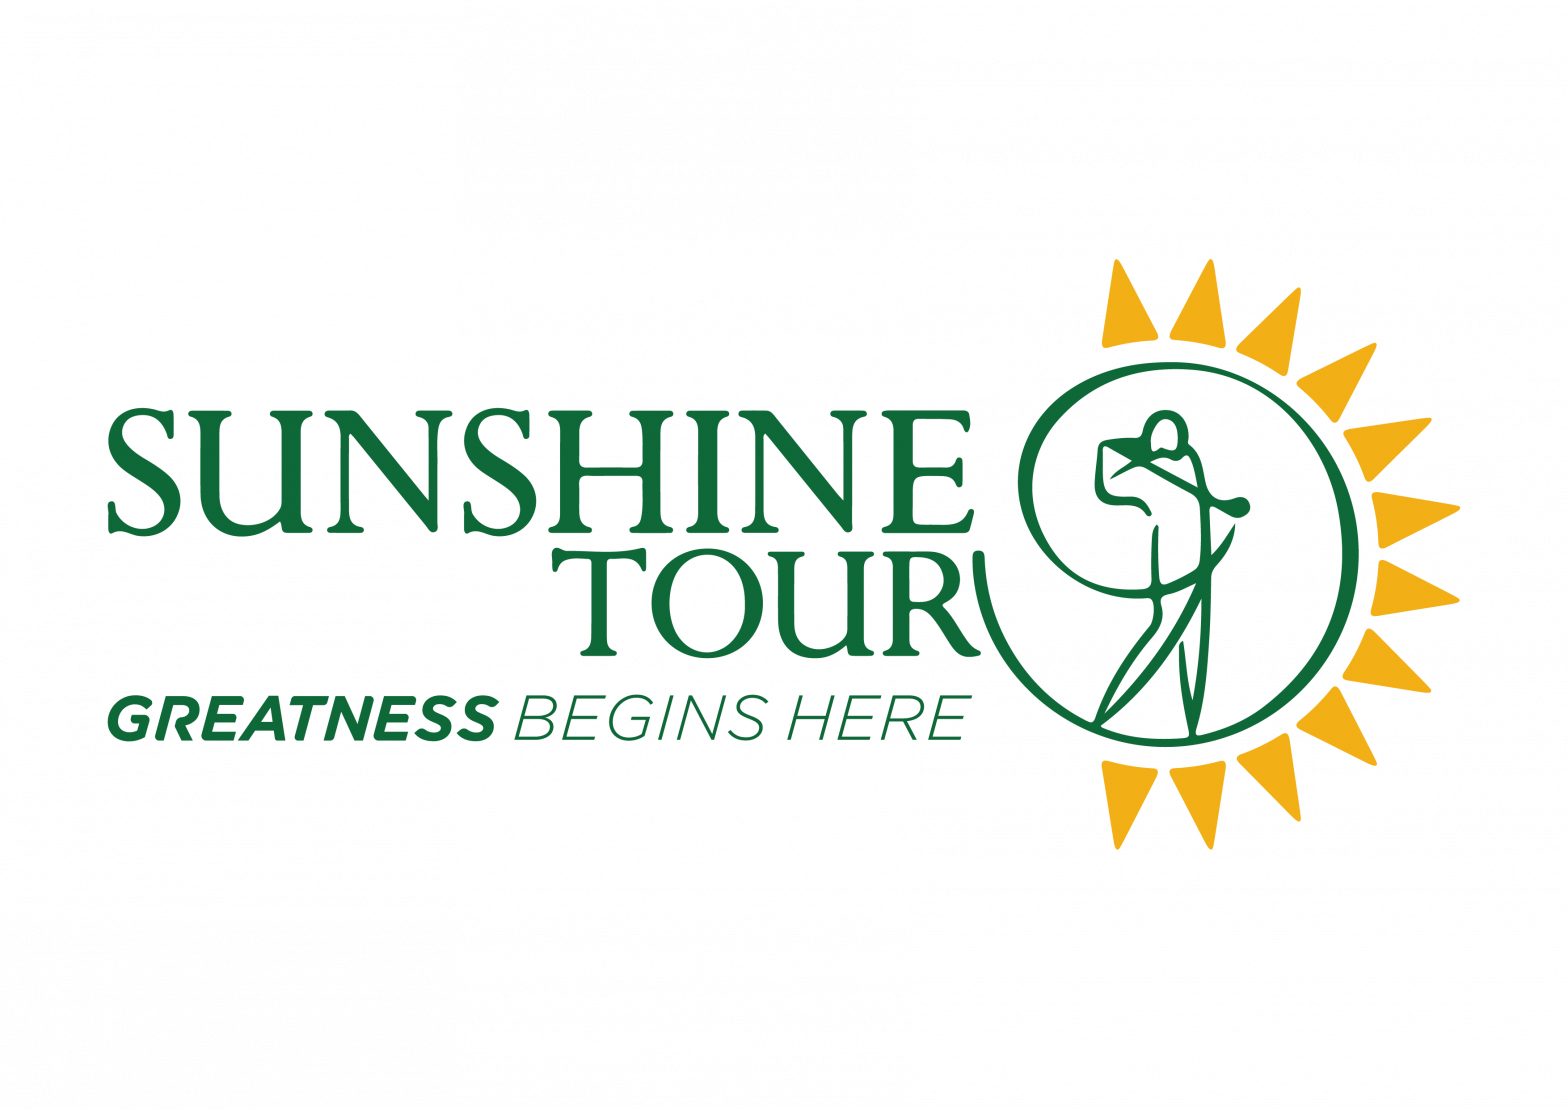 Sunshine Tour rewarded with landmark global partnership